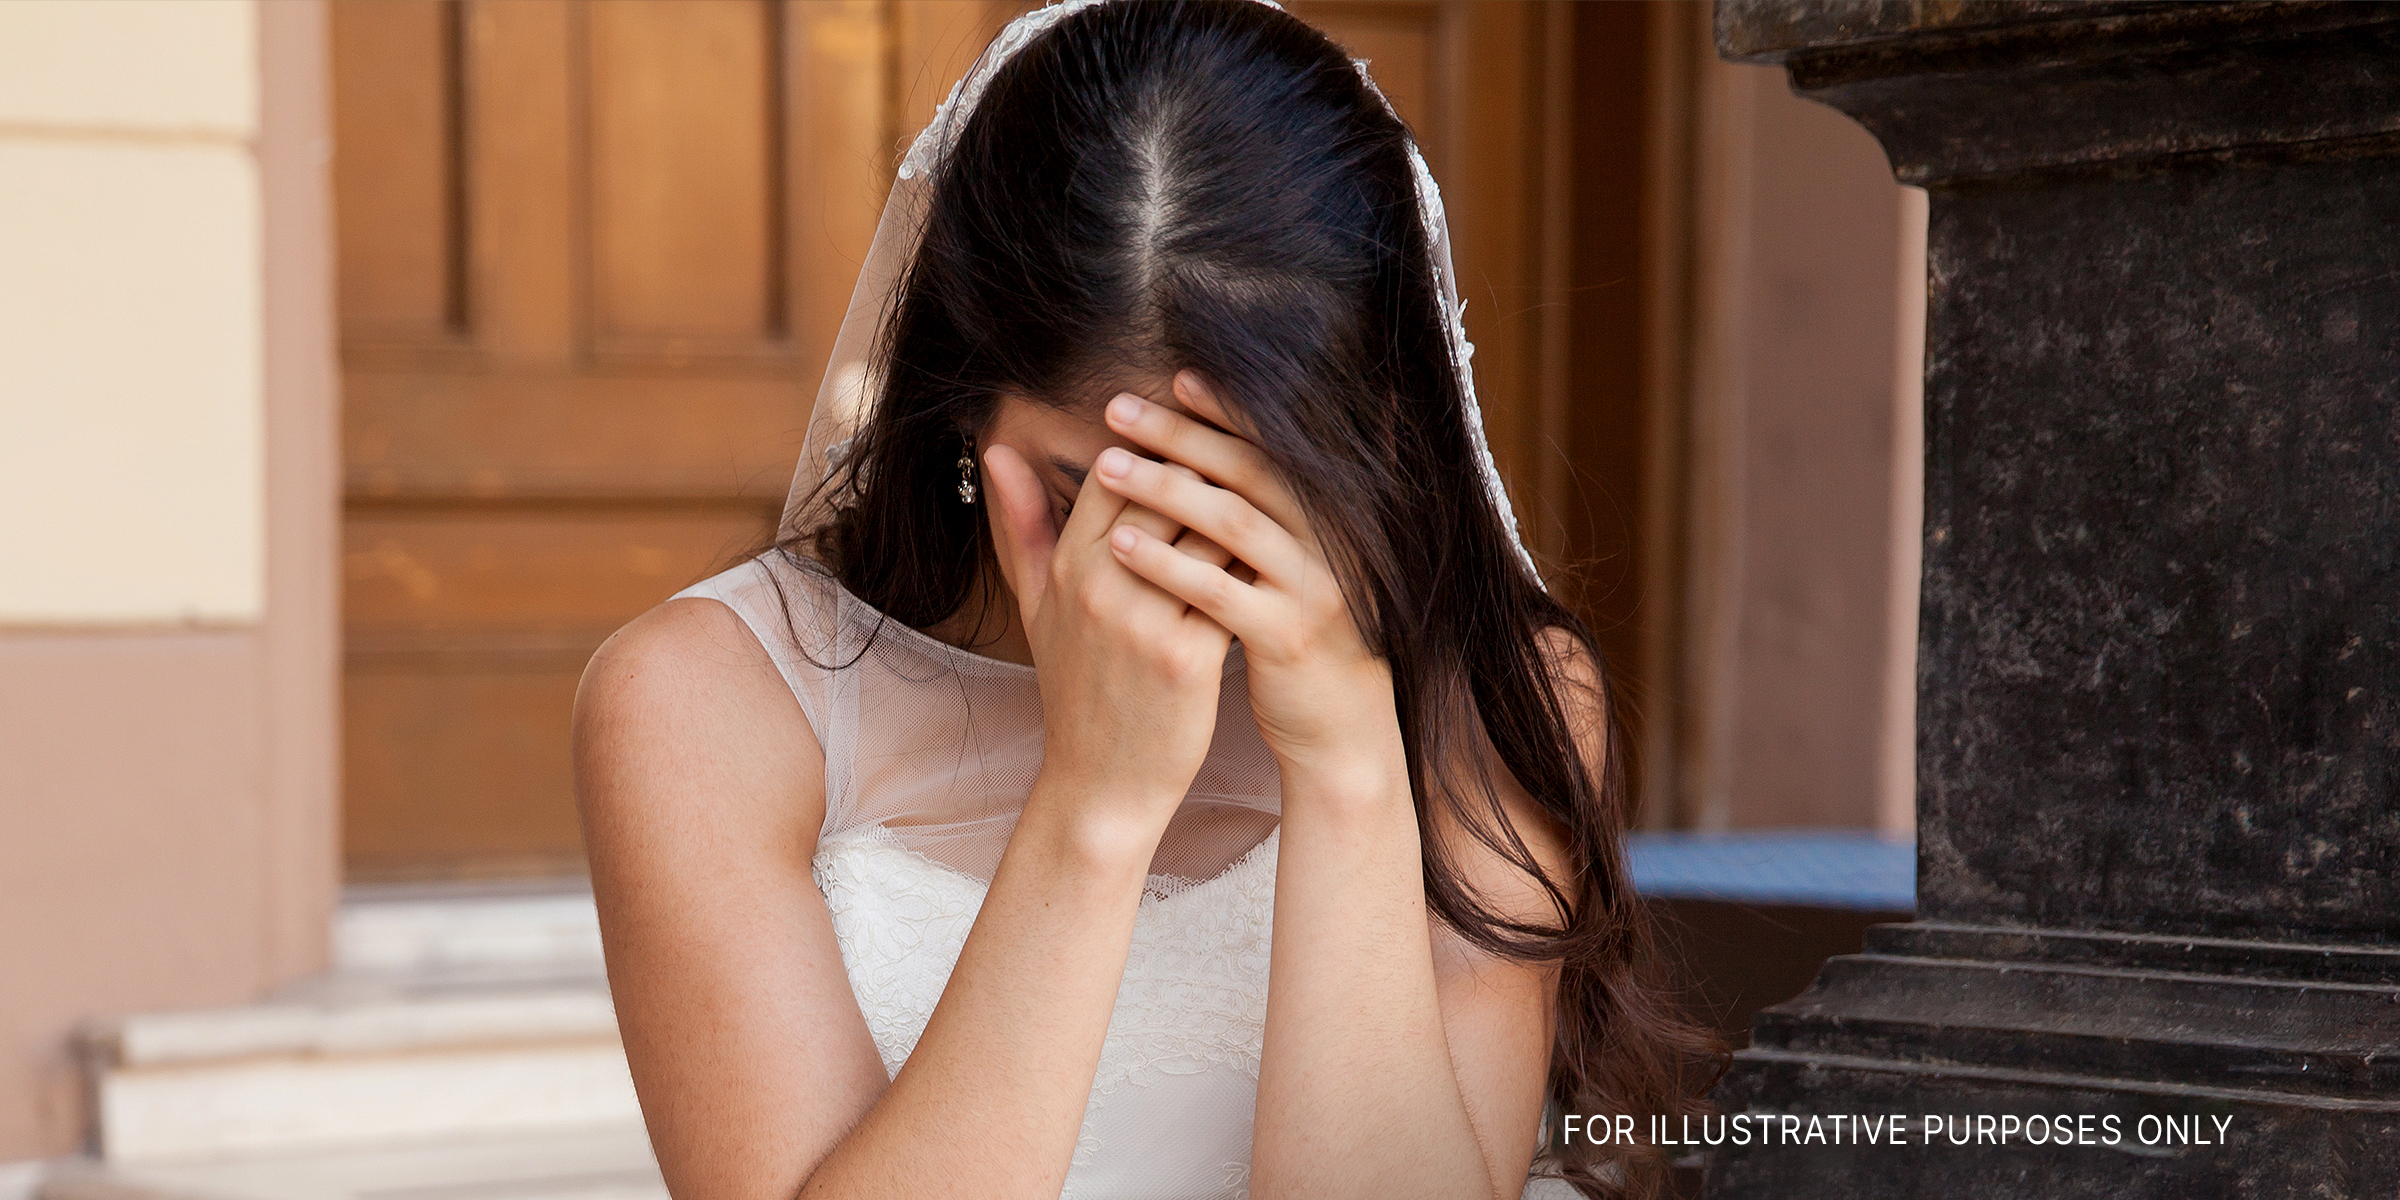 Upset bride | Source: Shutterstock